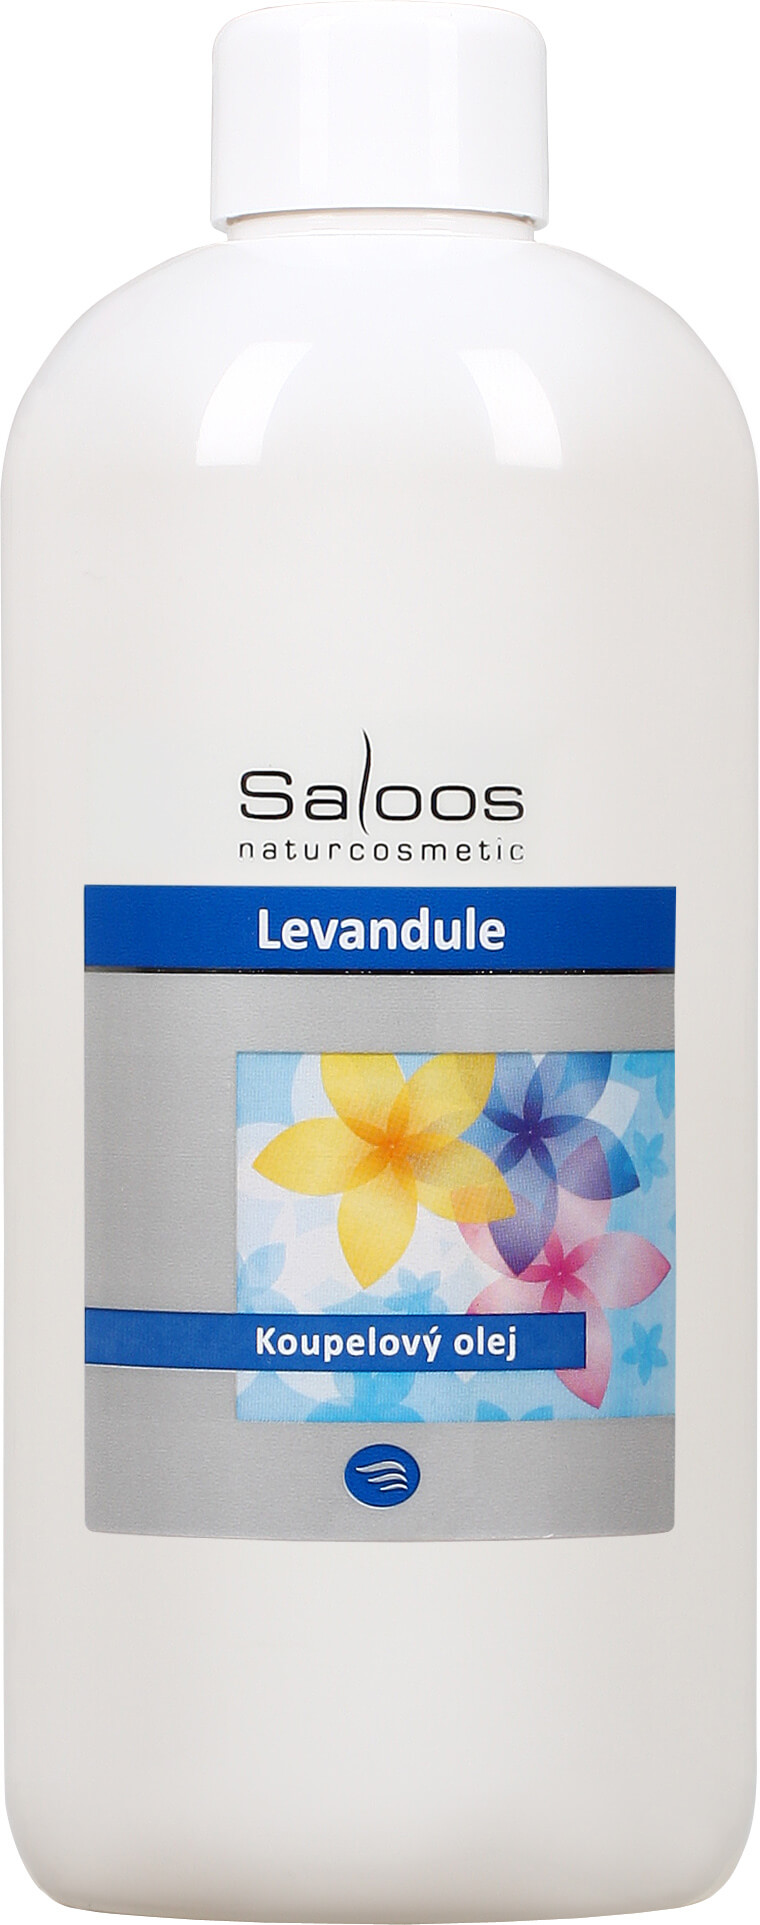 Zobrazit detail výrobku Saloos Koupelový olej - Levandule 250 ml + 2 měsíce na vrácení zboží